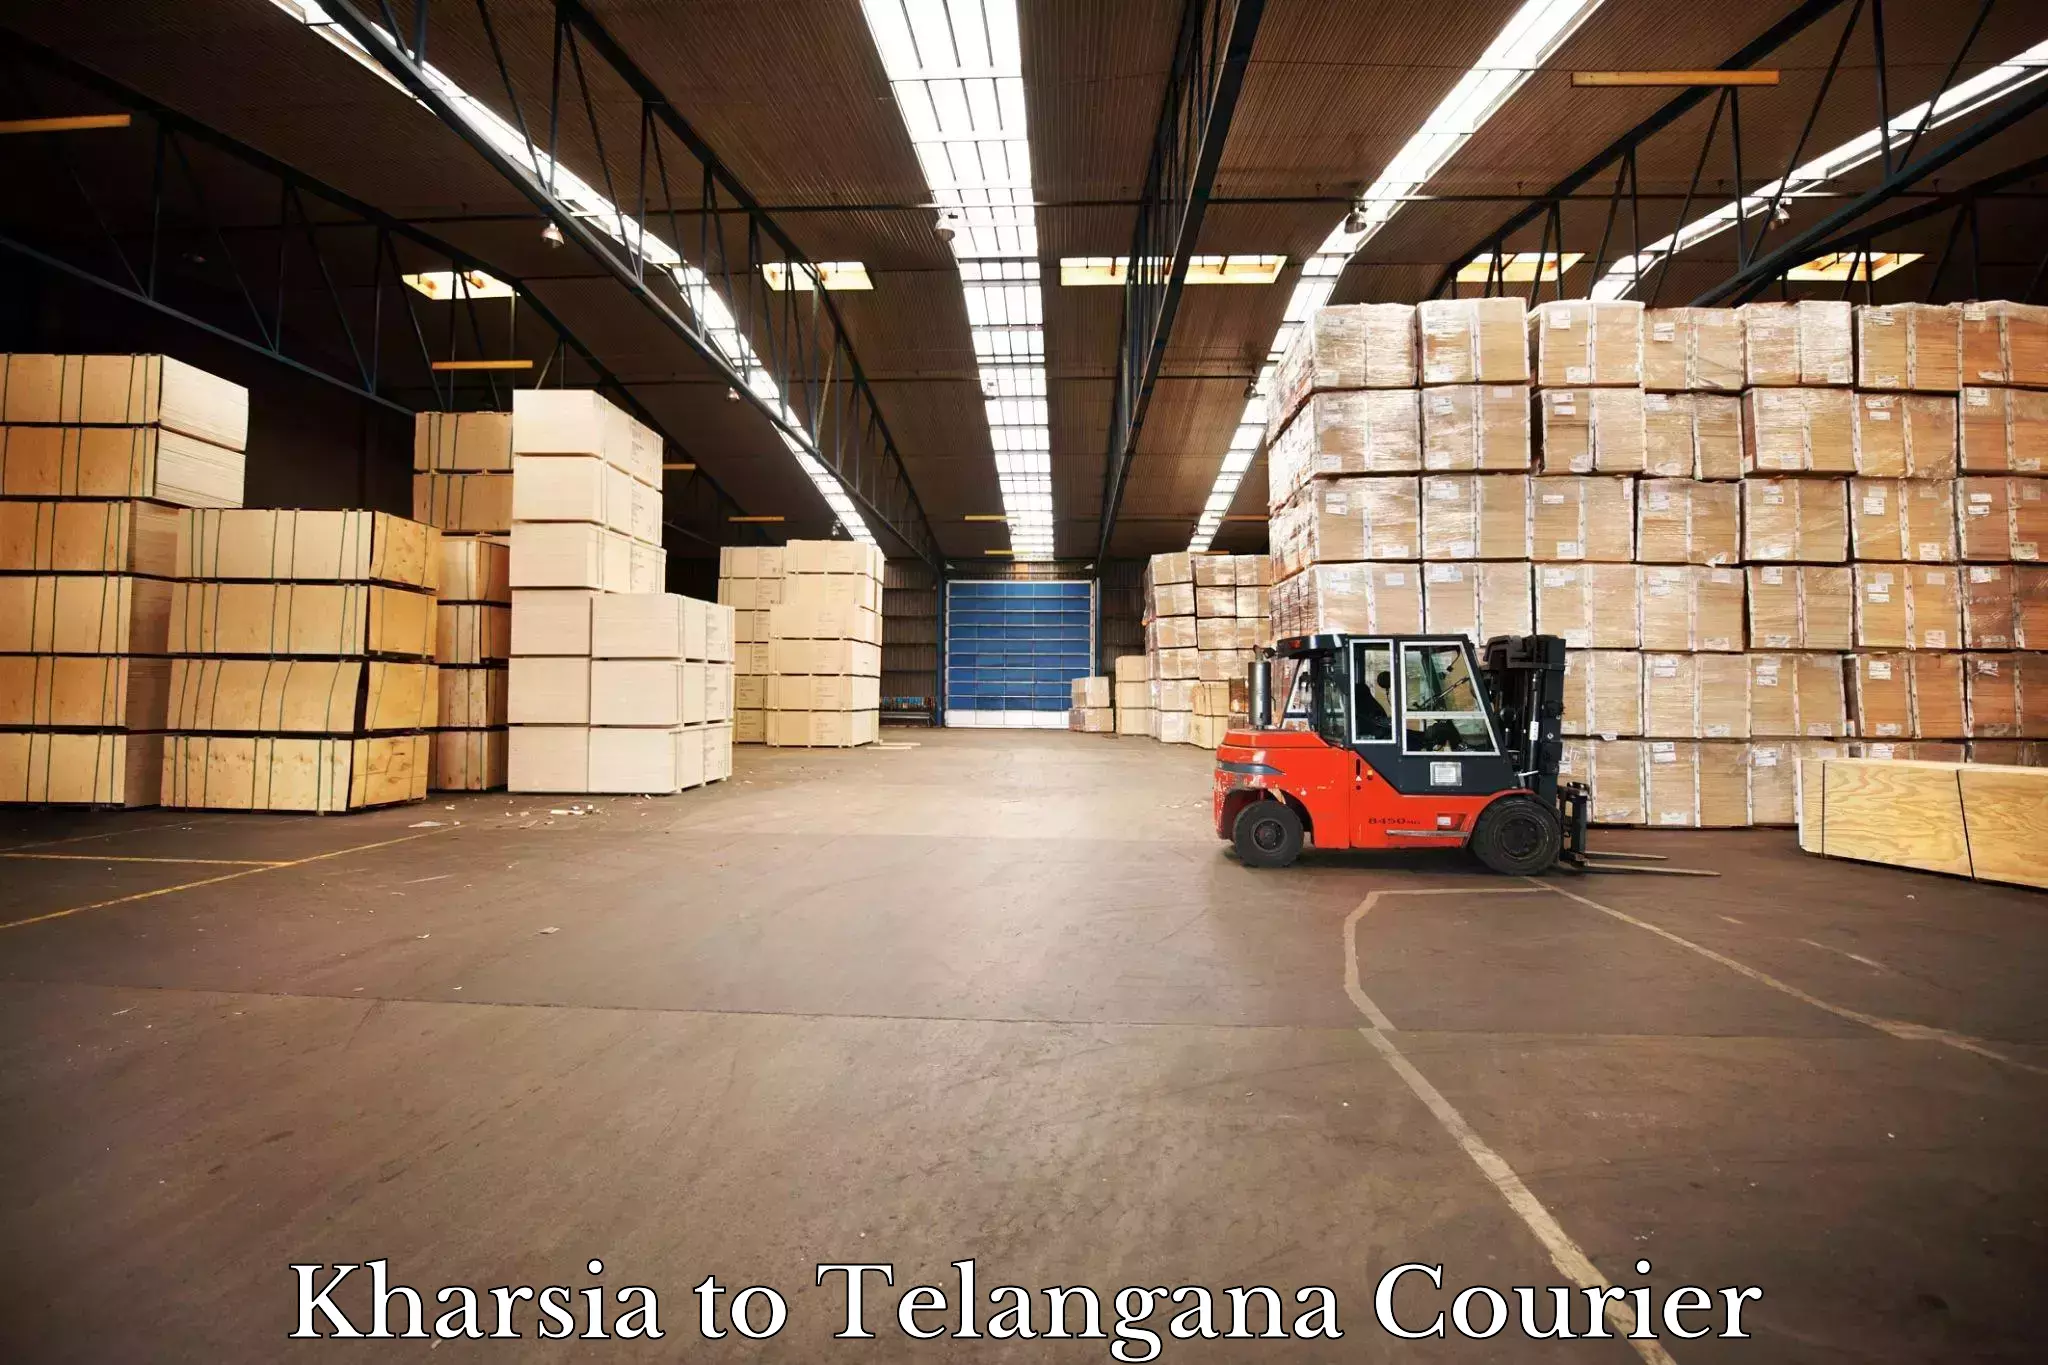 Advanced shipping technology Kharsia to Mogulla Pally